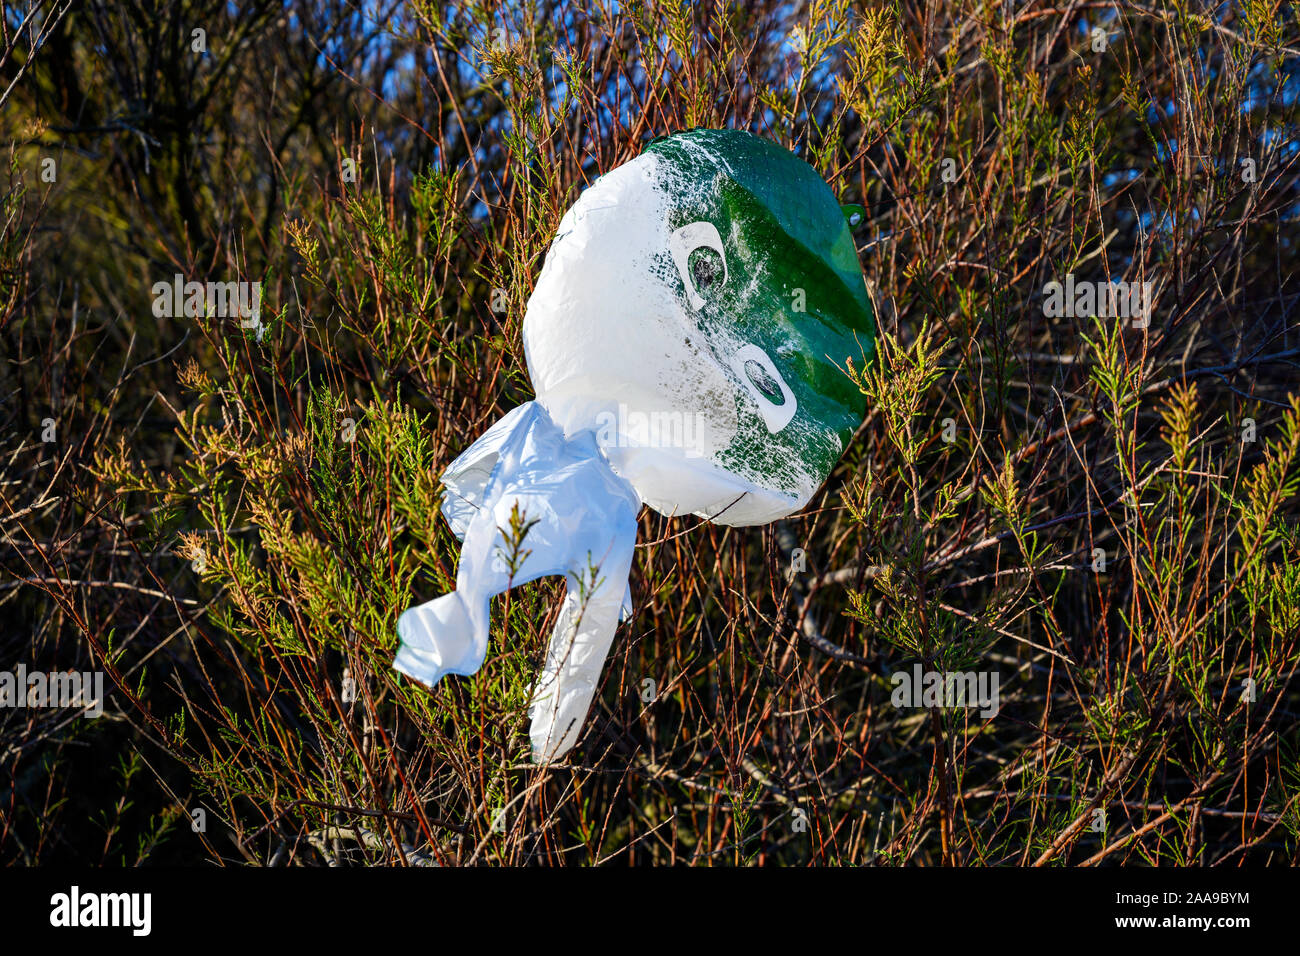 Jouet gonflable en plastique coincé dans les buissons, Bawdsey Ferry, Suffolk, UK Banque D'Images